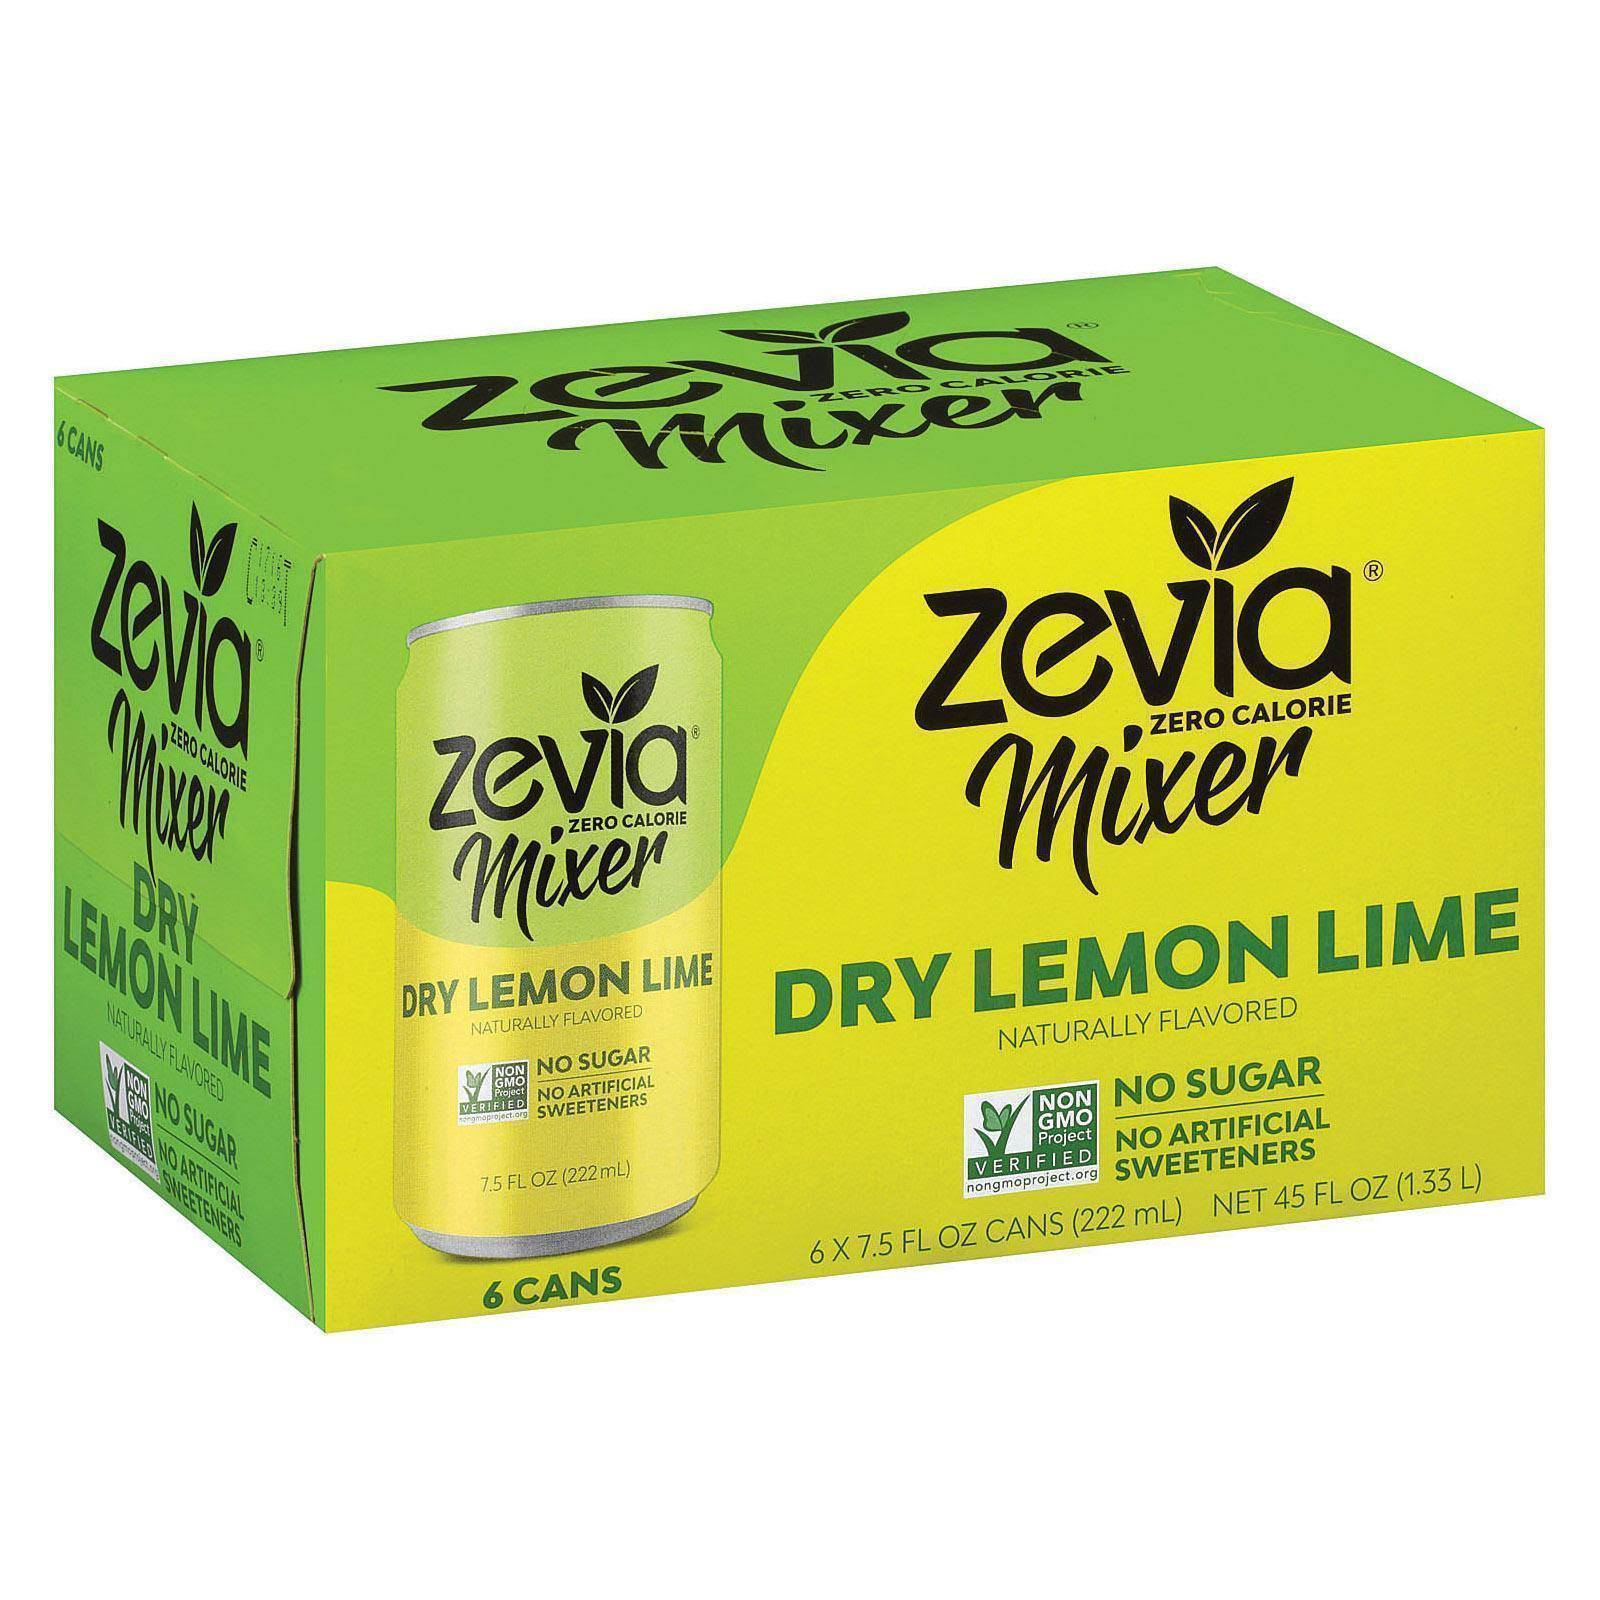 Zevia Mixer, Zero Calorie, Dry Lemon Lime - 6 pack, 7.5 fl oz cans